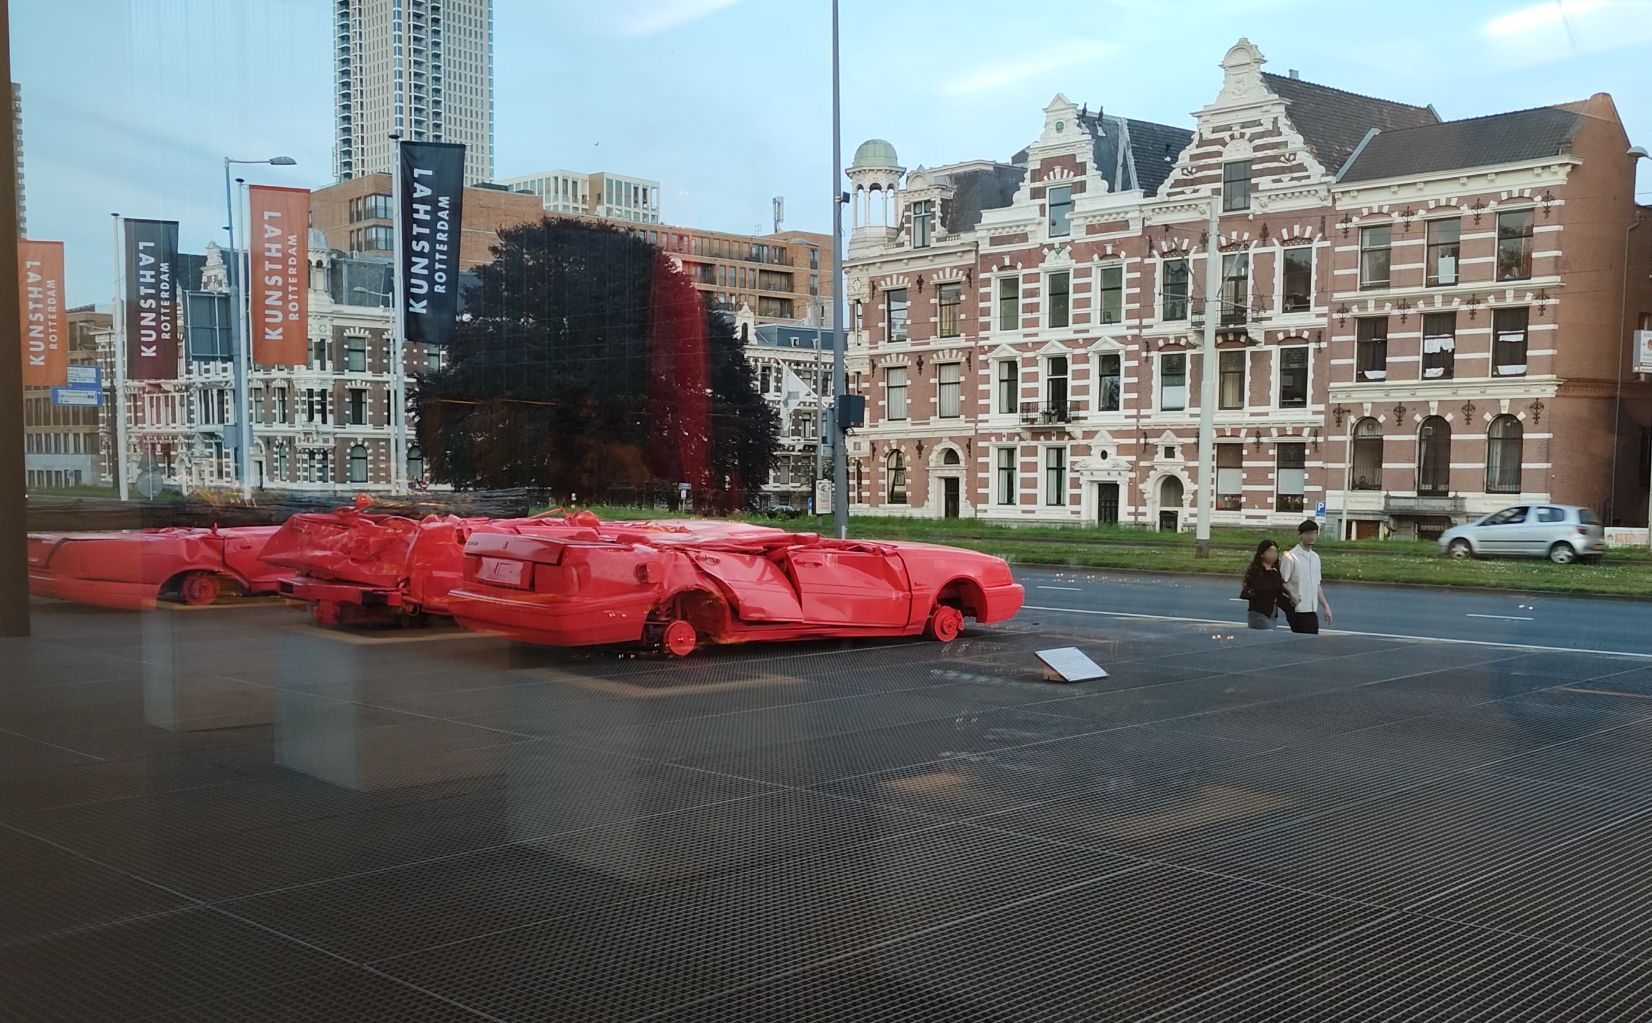 6(9): Les carrosseries démolies d'anciennes voitures de luxe sur l'esplanade du Kunsthal attirent les regards des passants de Rotterdam.